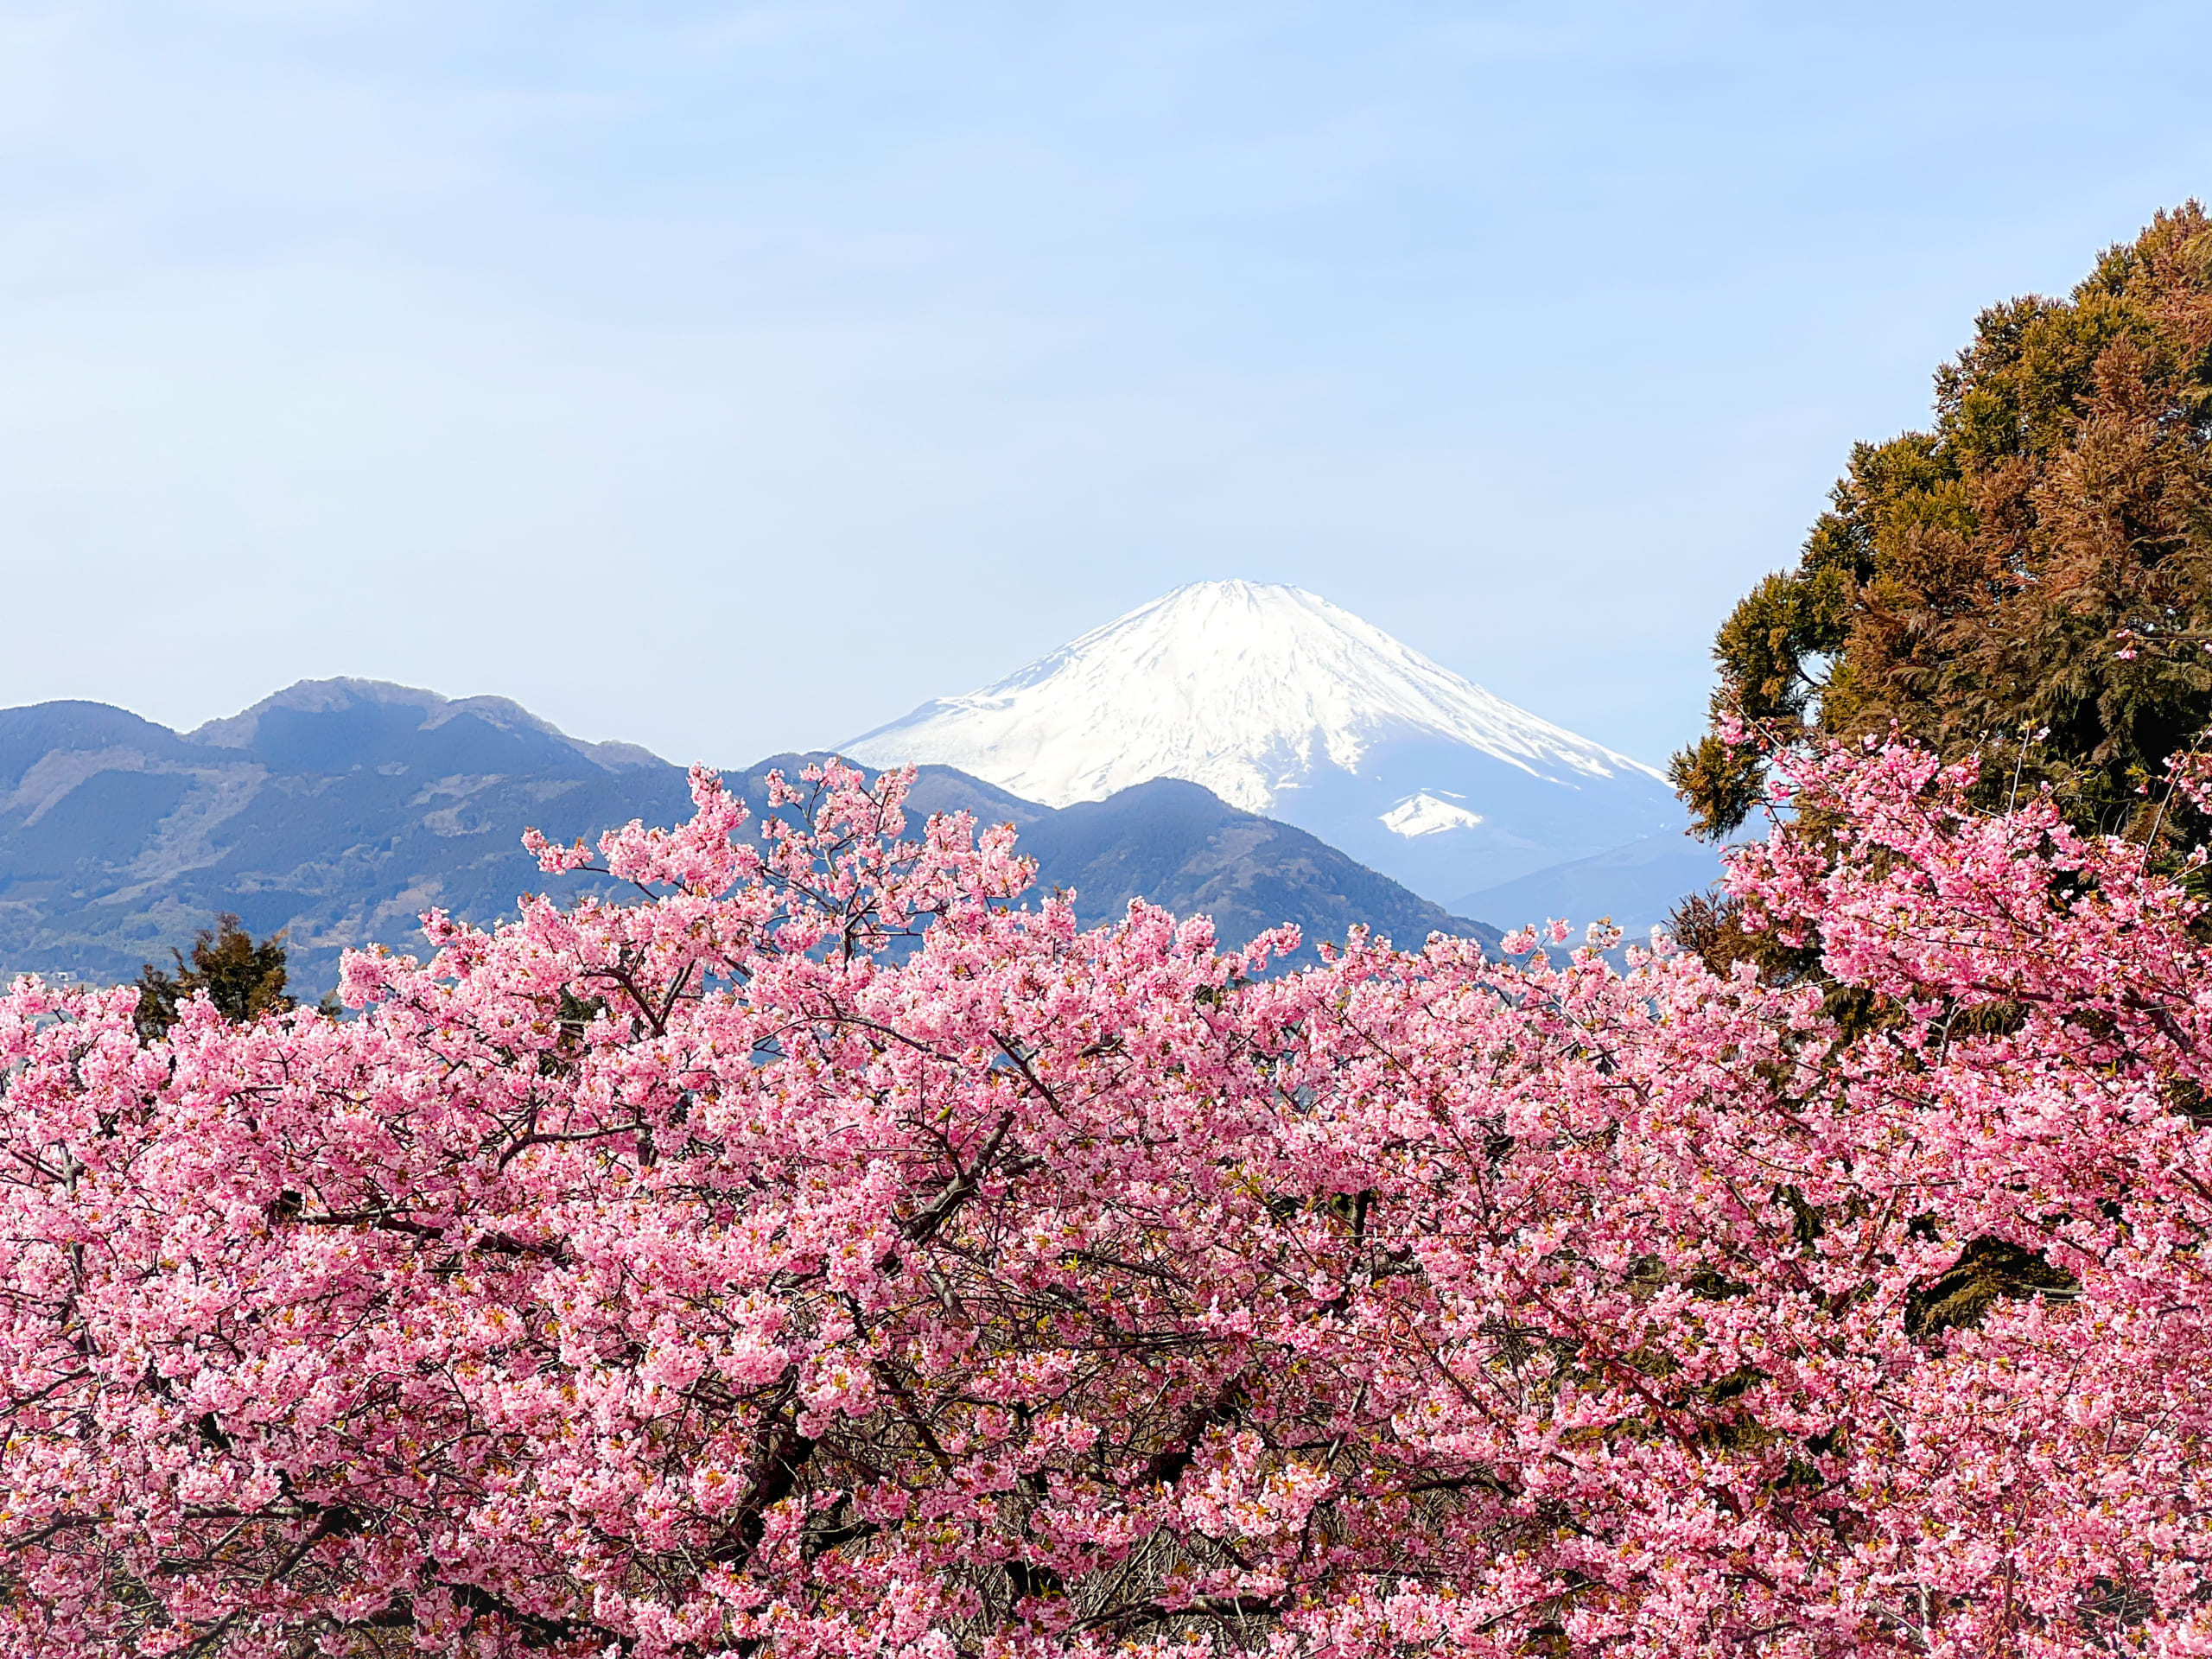 Matsuda Cherry Blossom Festival